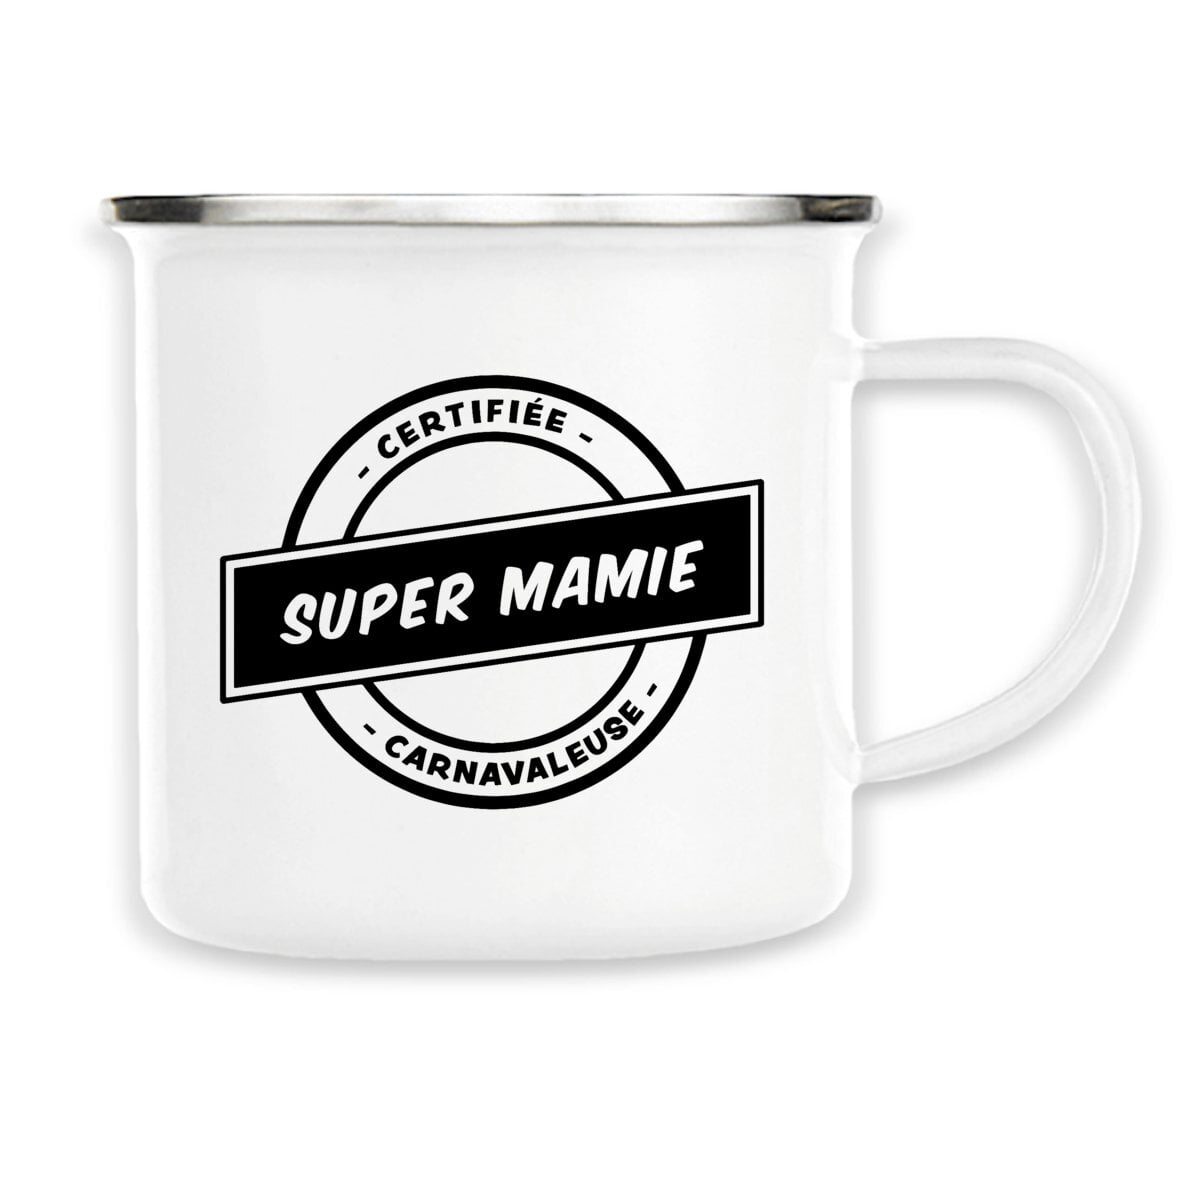 Mug Super mamie